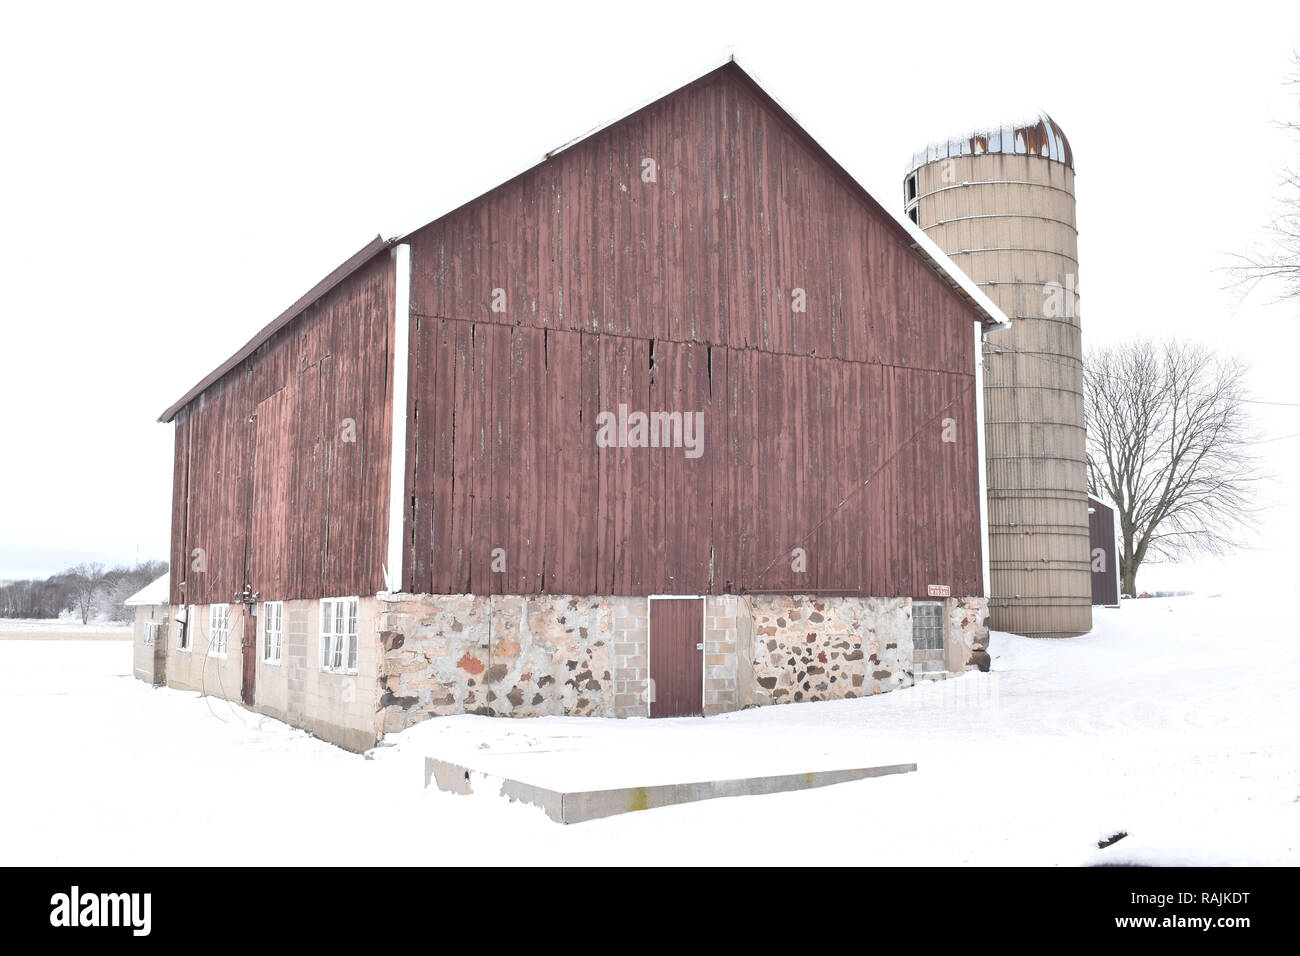 Vintage style red barn avec pierres, silo à ciment sur une ferme dans une région rurale en hiver USA Banque D'Images